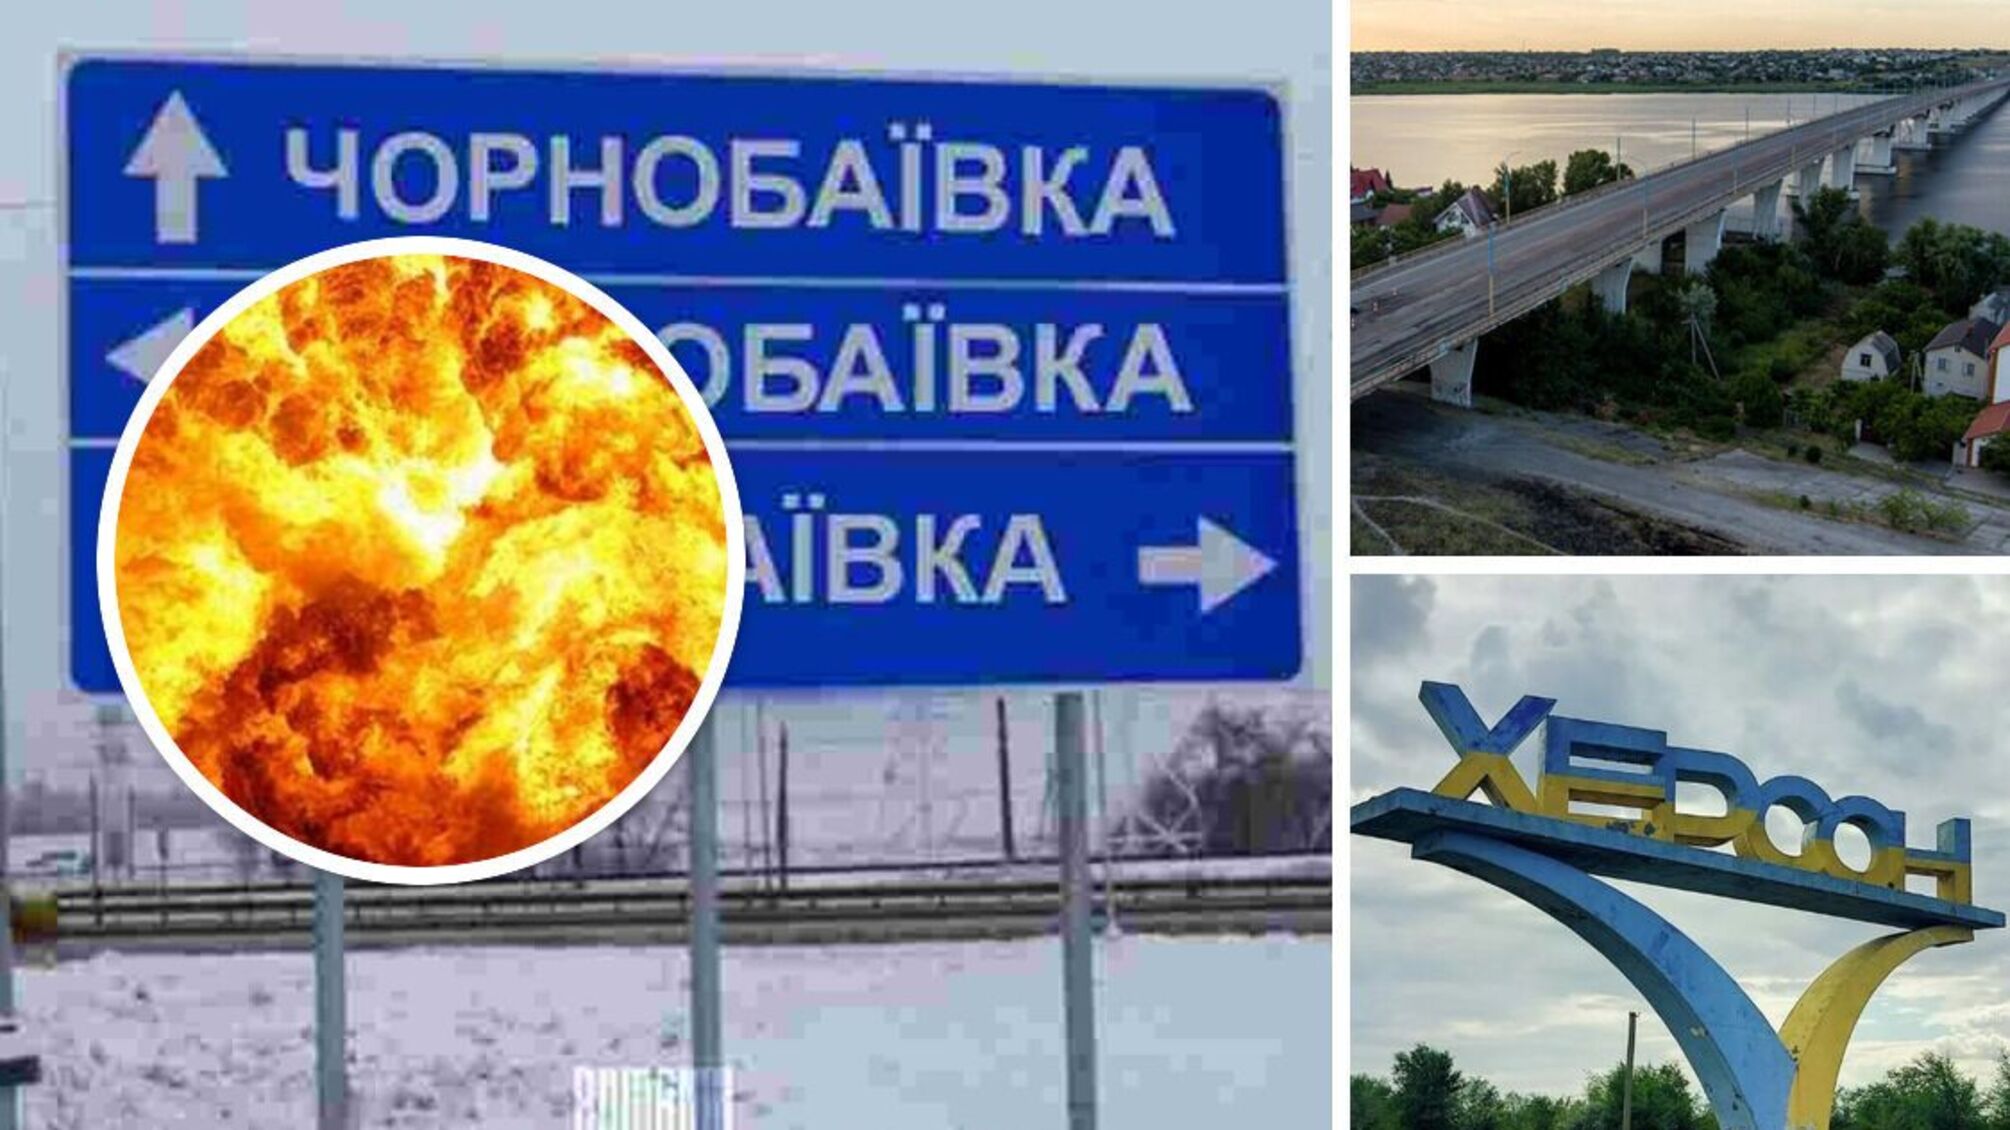 У Чорнобаївці – фінальний рахунок, у Херсоні та біля Антонівського мосту – гримить, палає: подробиці